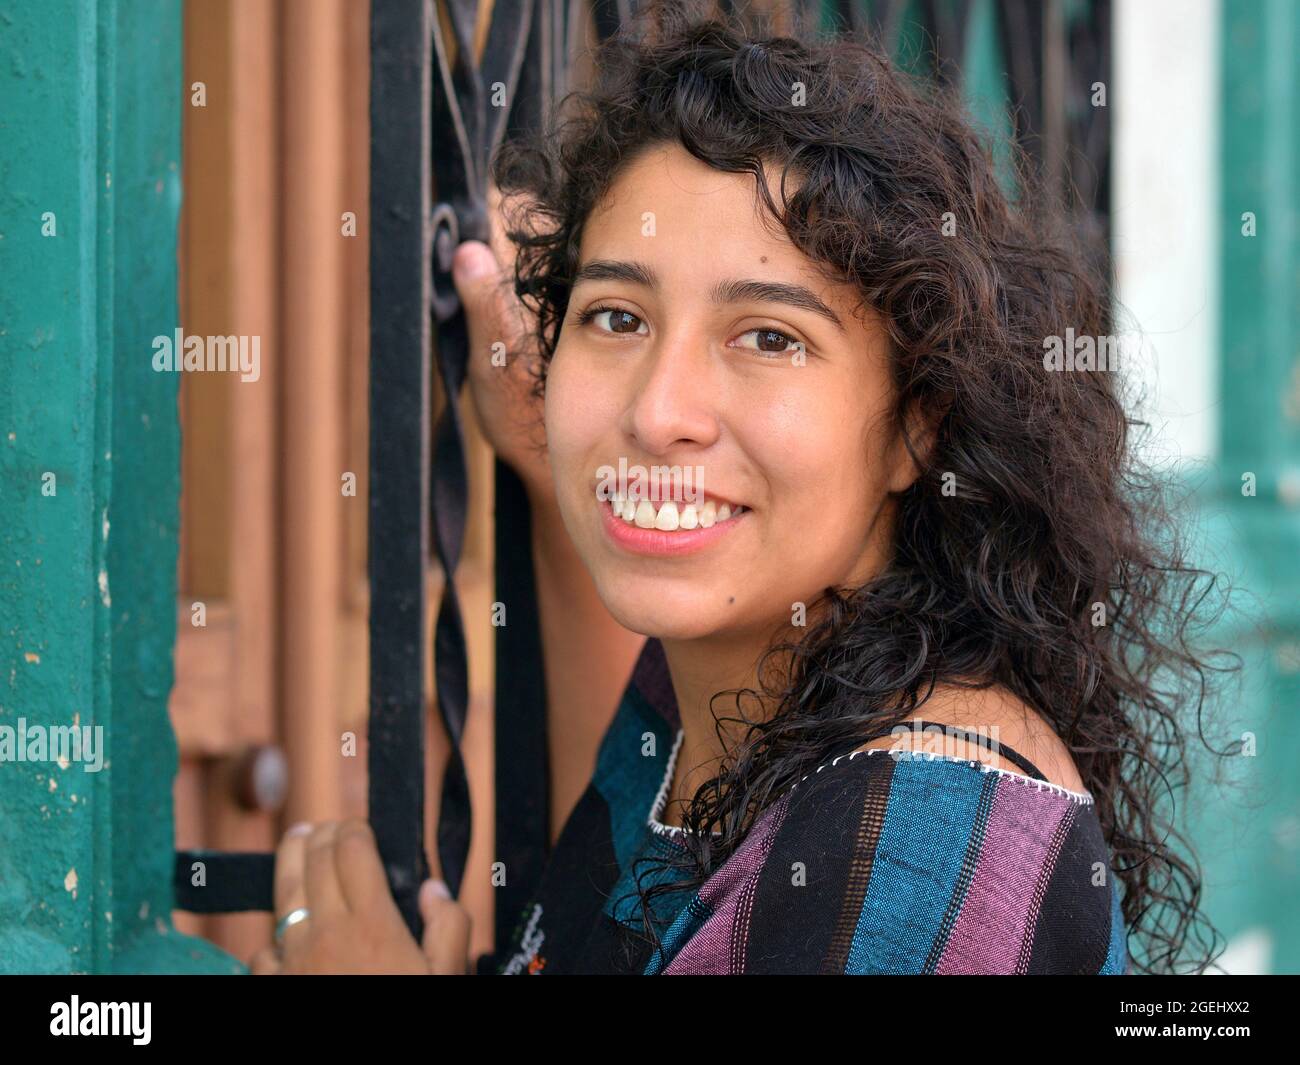 Belle positive émotive jeune mexicaine Latina hispanique femme avec de longues boucles noires maintient à un noir de sécurité de la grille de fenêtre en acier peint. Banque D'Images